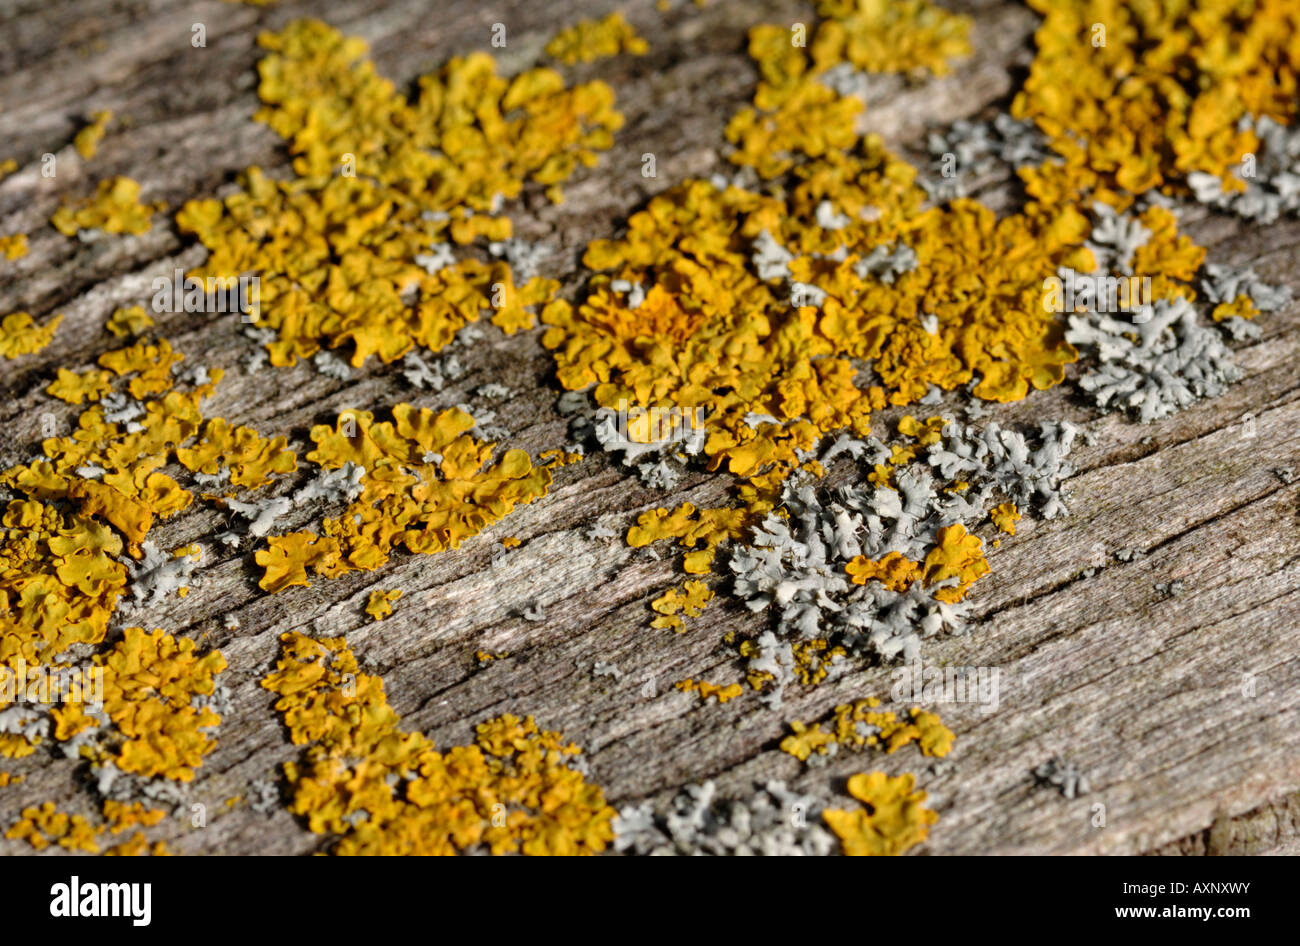 lichens on rotting wood. UK Stock Photo